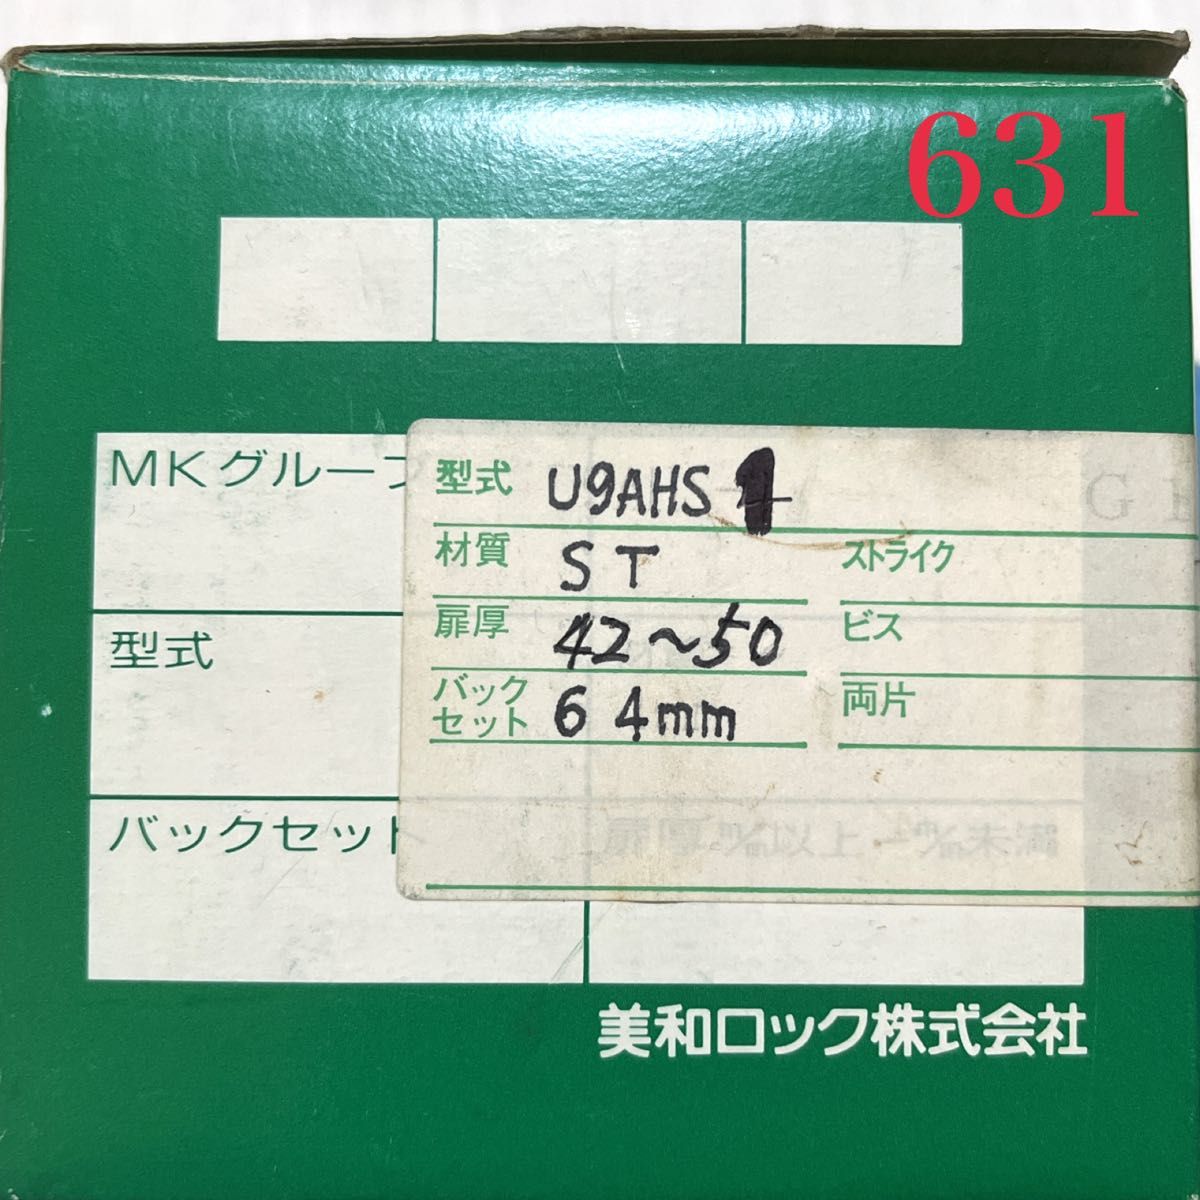 【631】MIWA 美和ロック U9 AHS 1